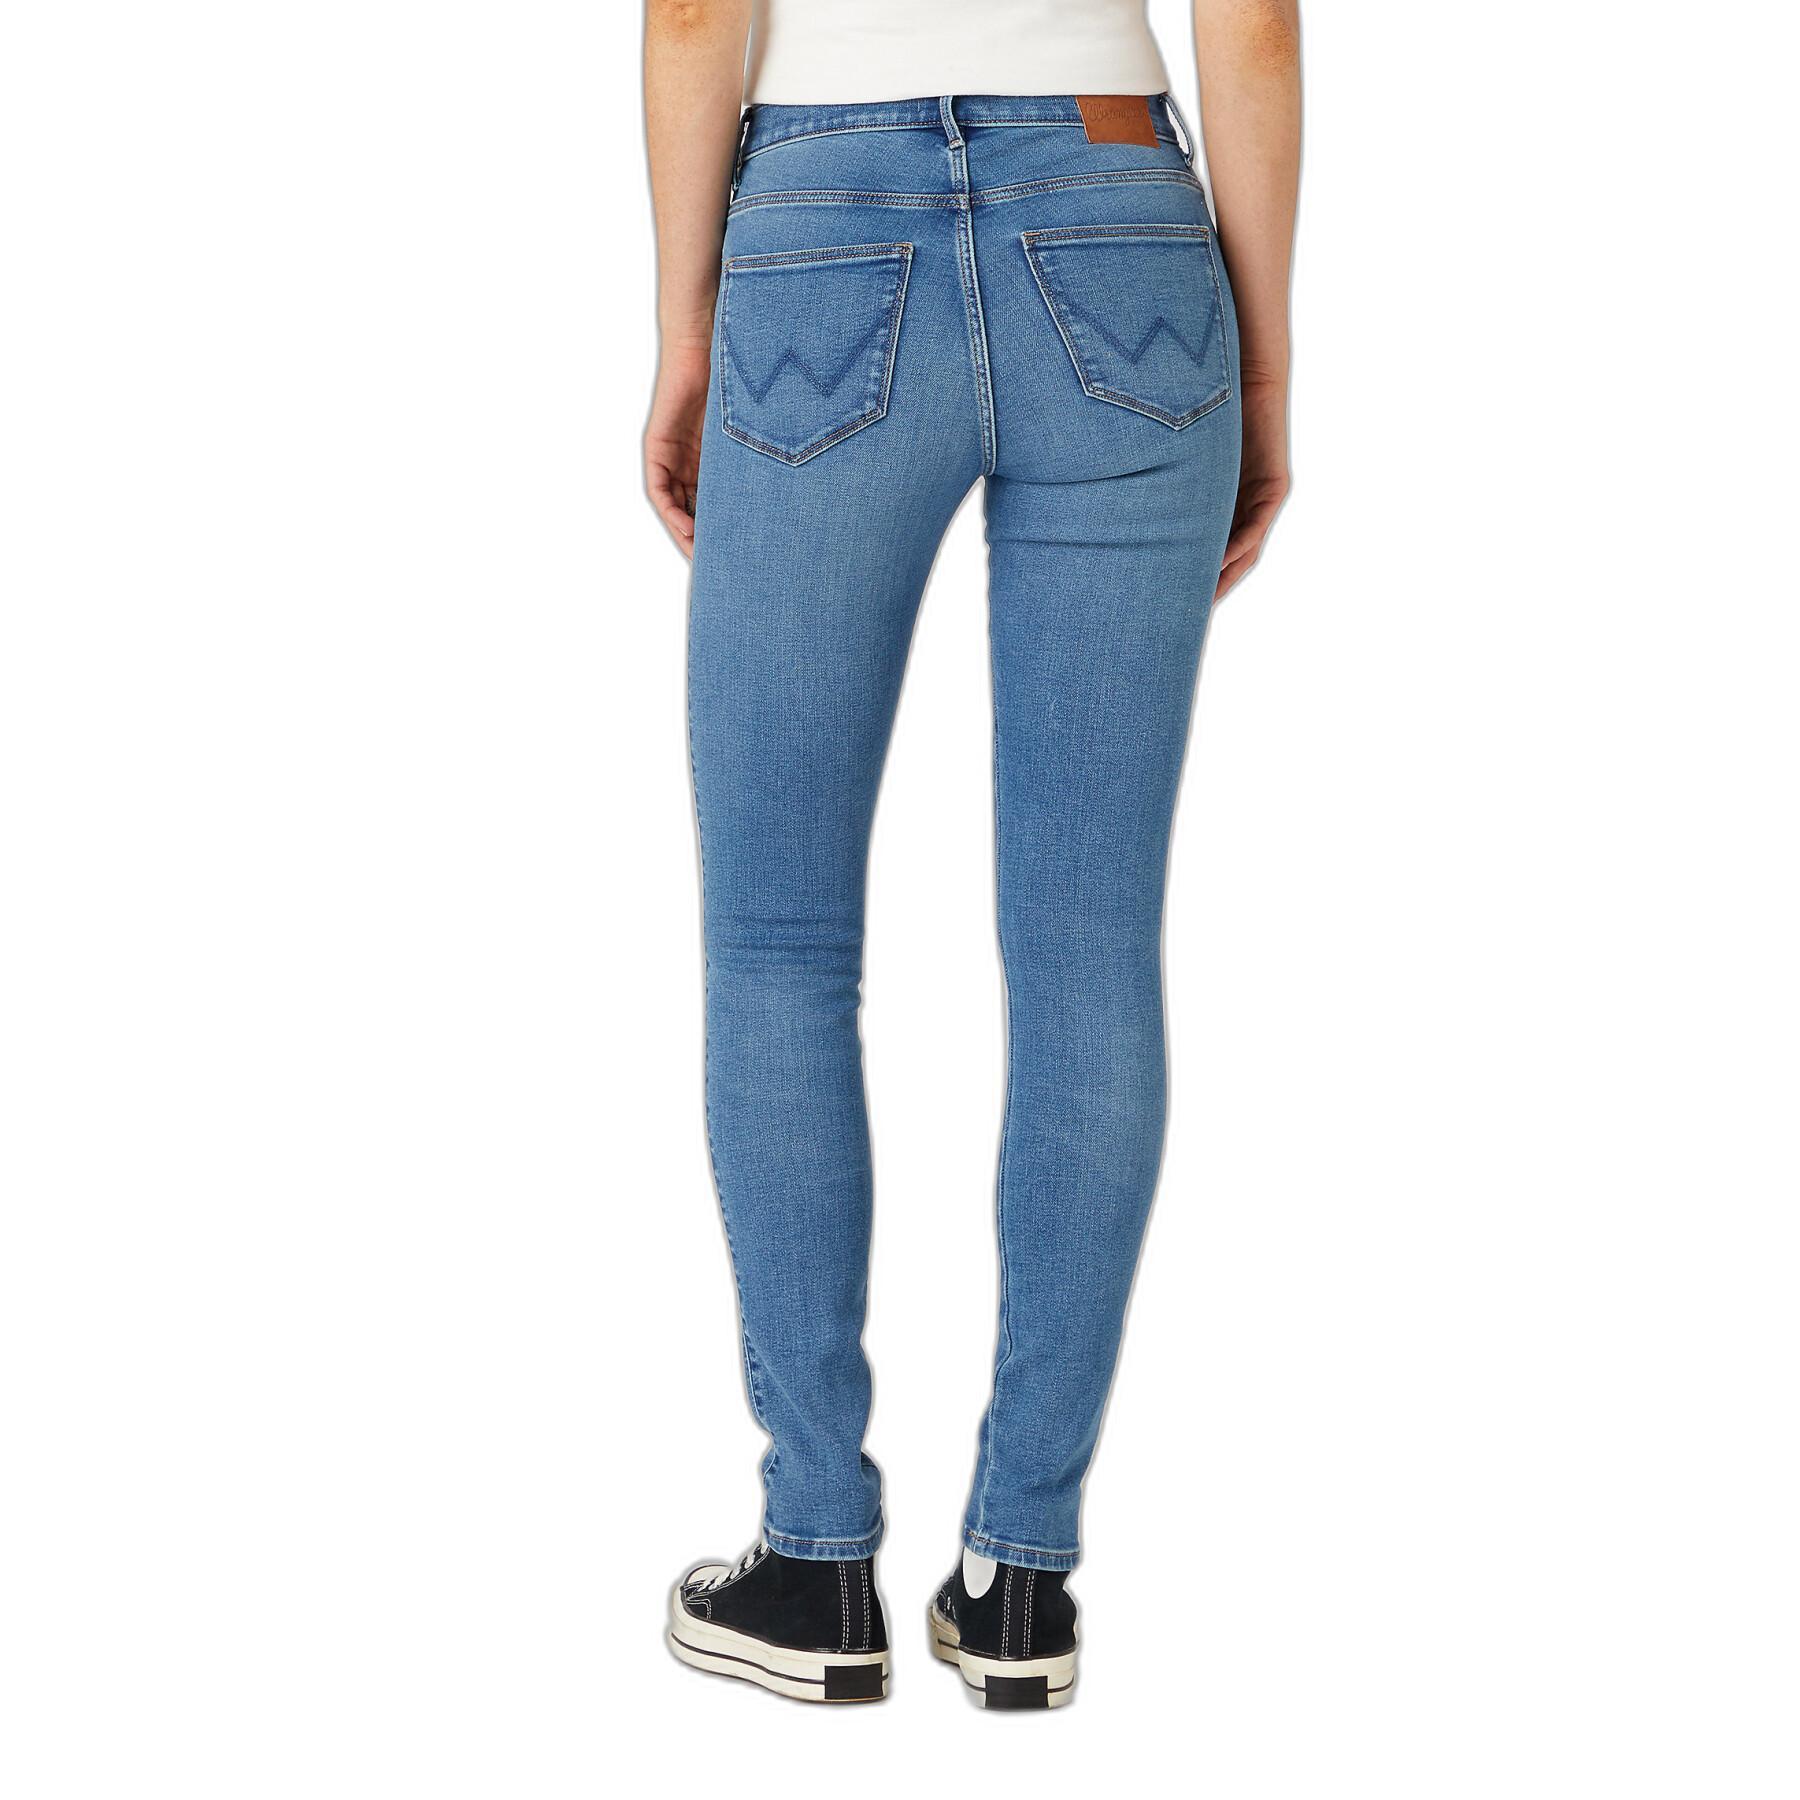 Jeans mulheres altas e magras Wrangler